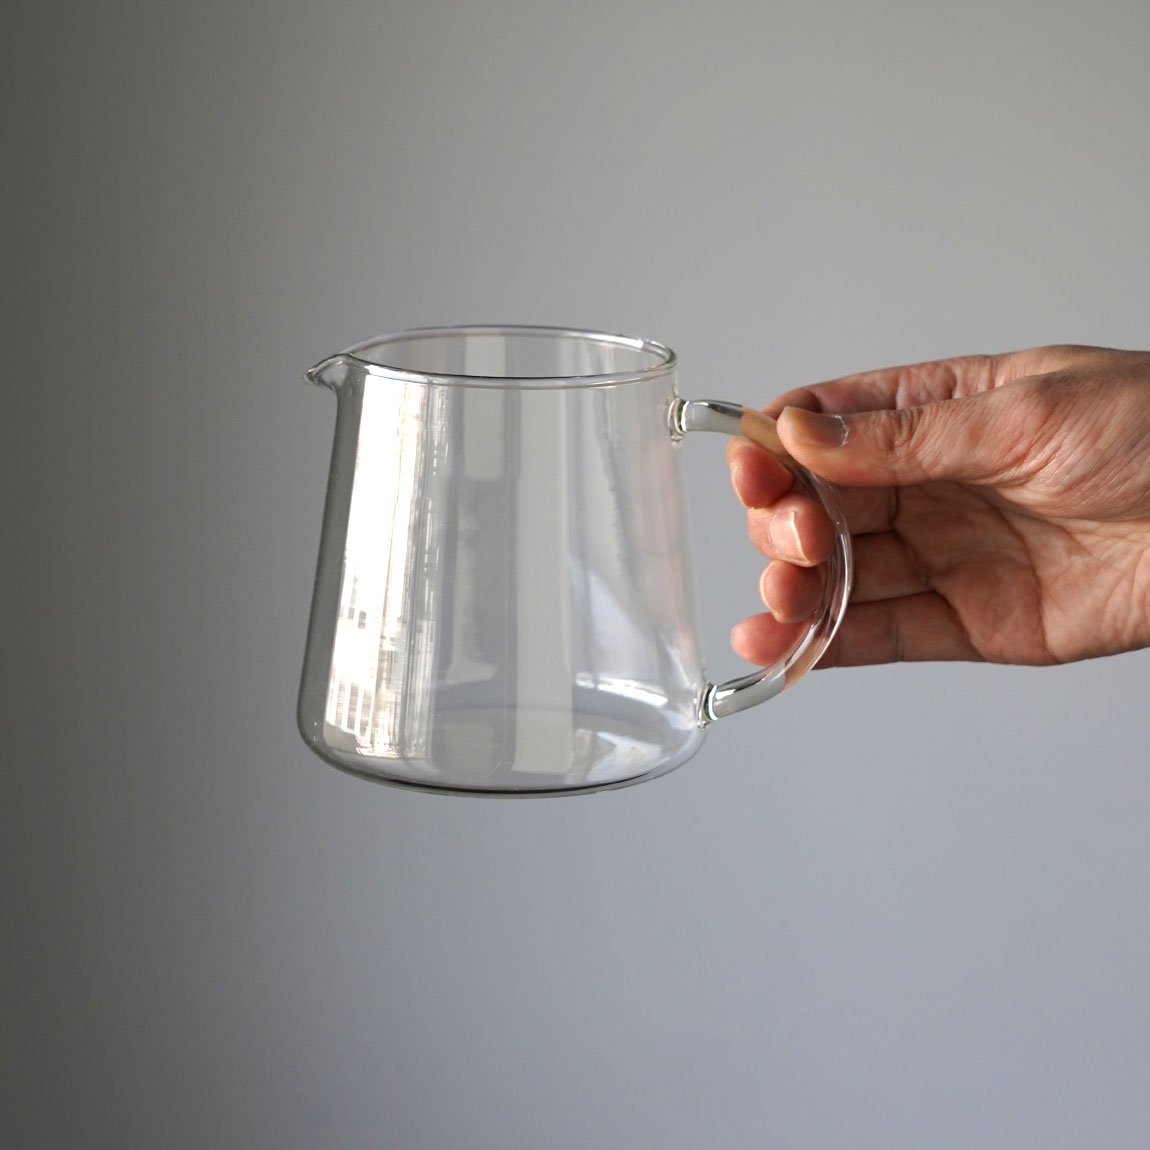 Trendglas-Jena  トレンドグラスイエナ ポアーオーバーカンネ Pour Over Kanne  耐熱ガラス　ガラスポット コーヒーサーバー  